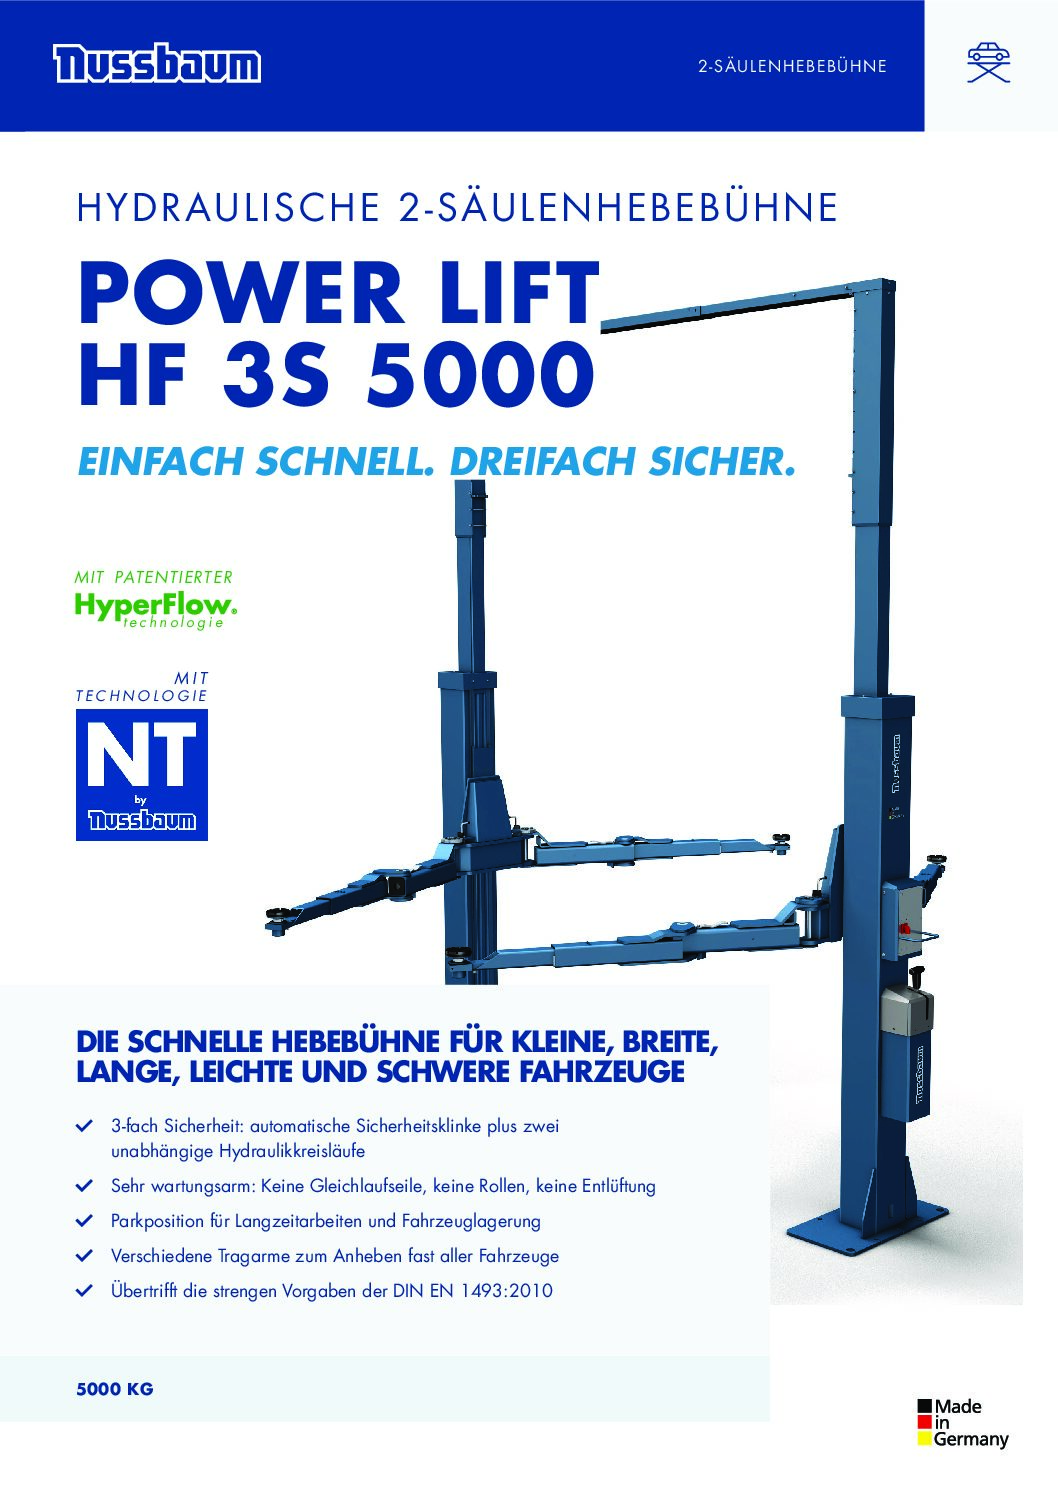 Nussbaum 2-Säulen-Hebebühne Power Lift HF 3S 5000 DG